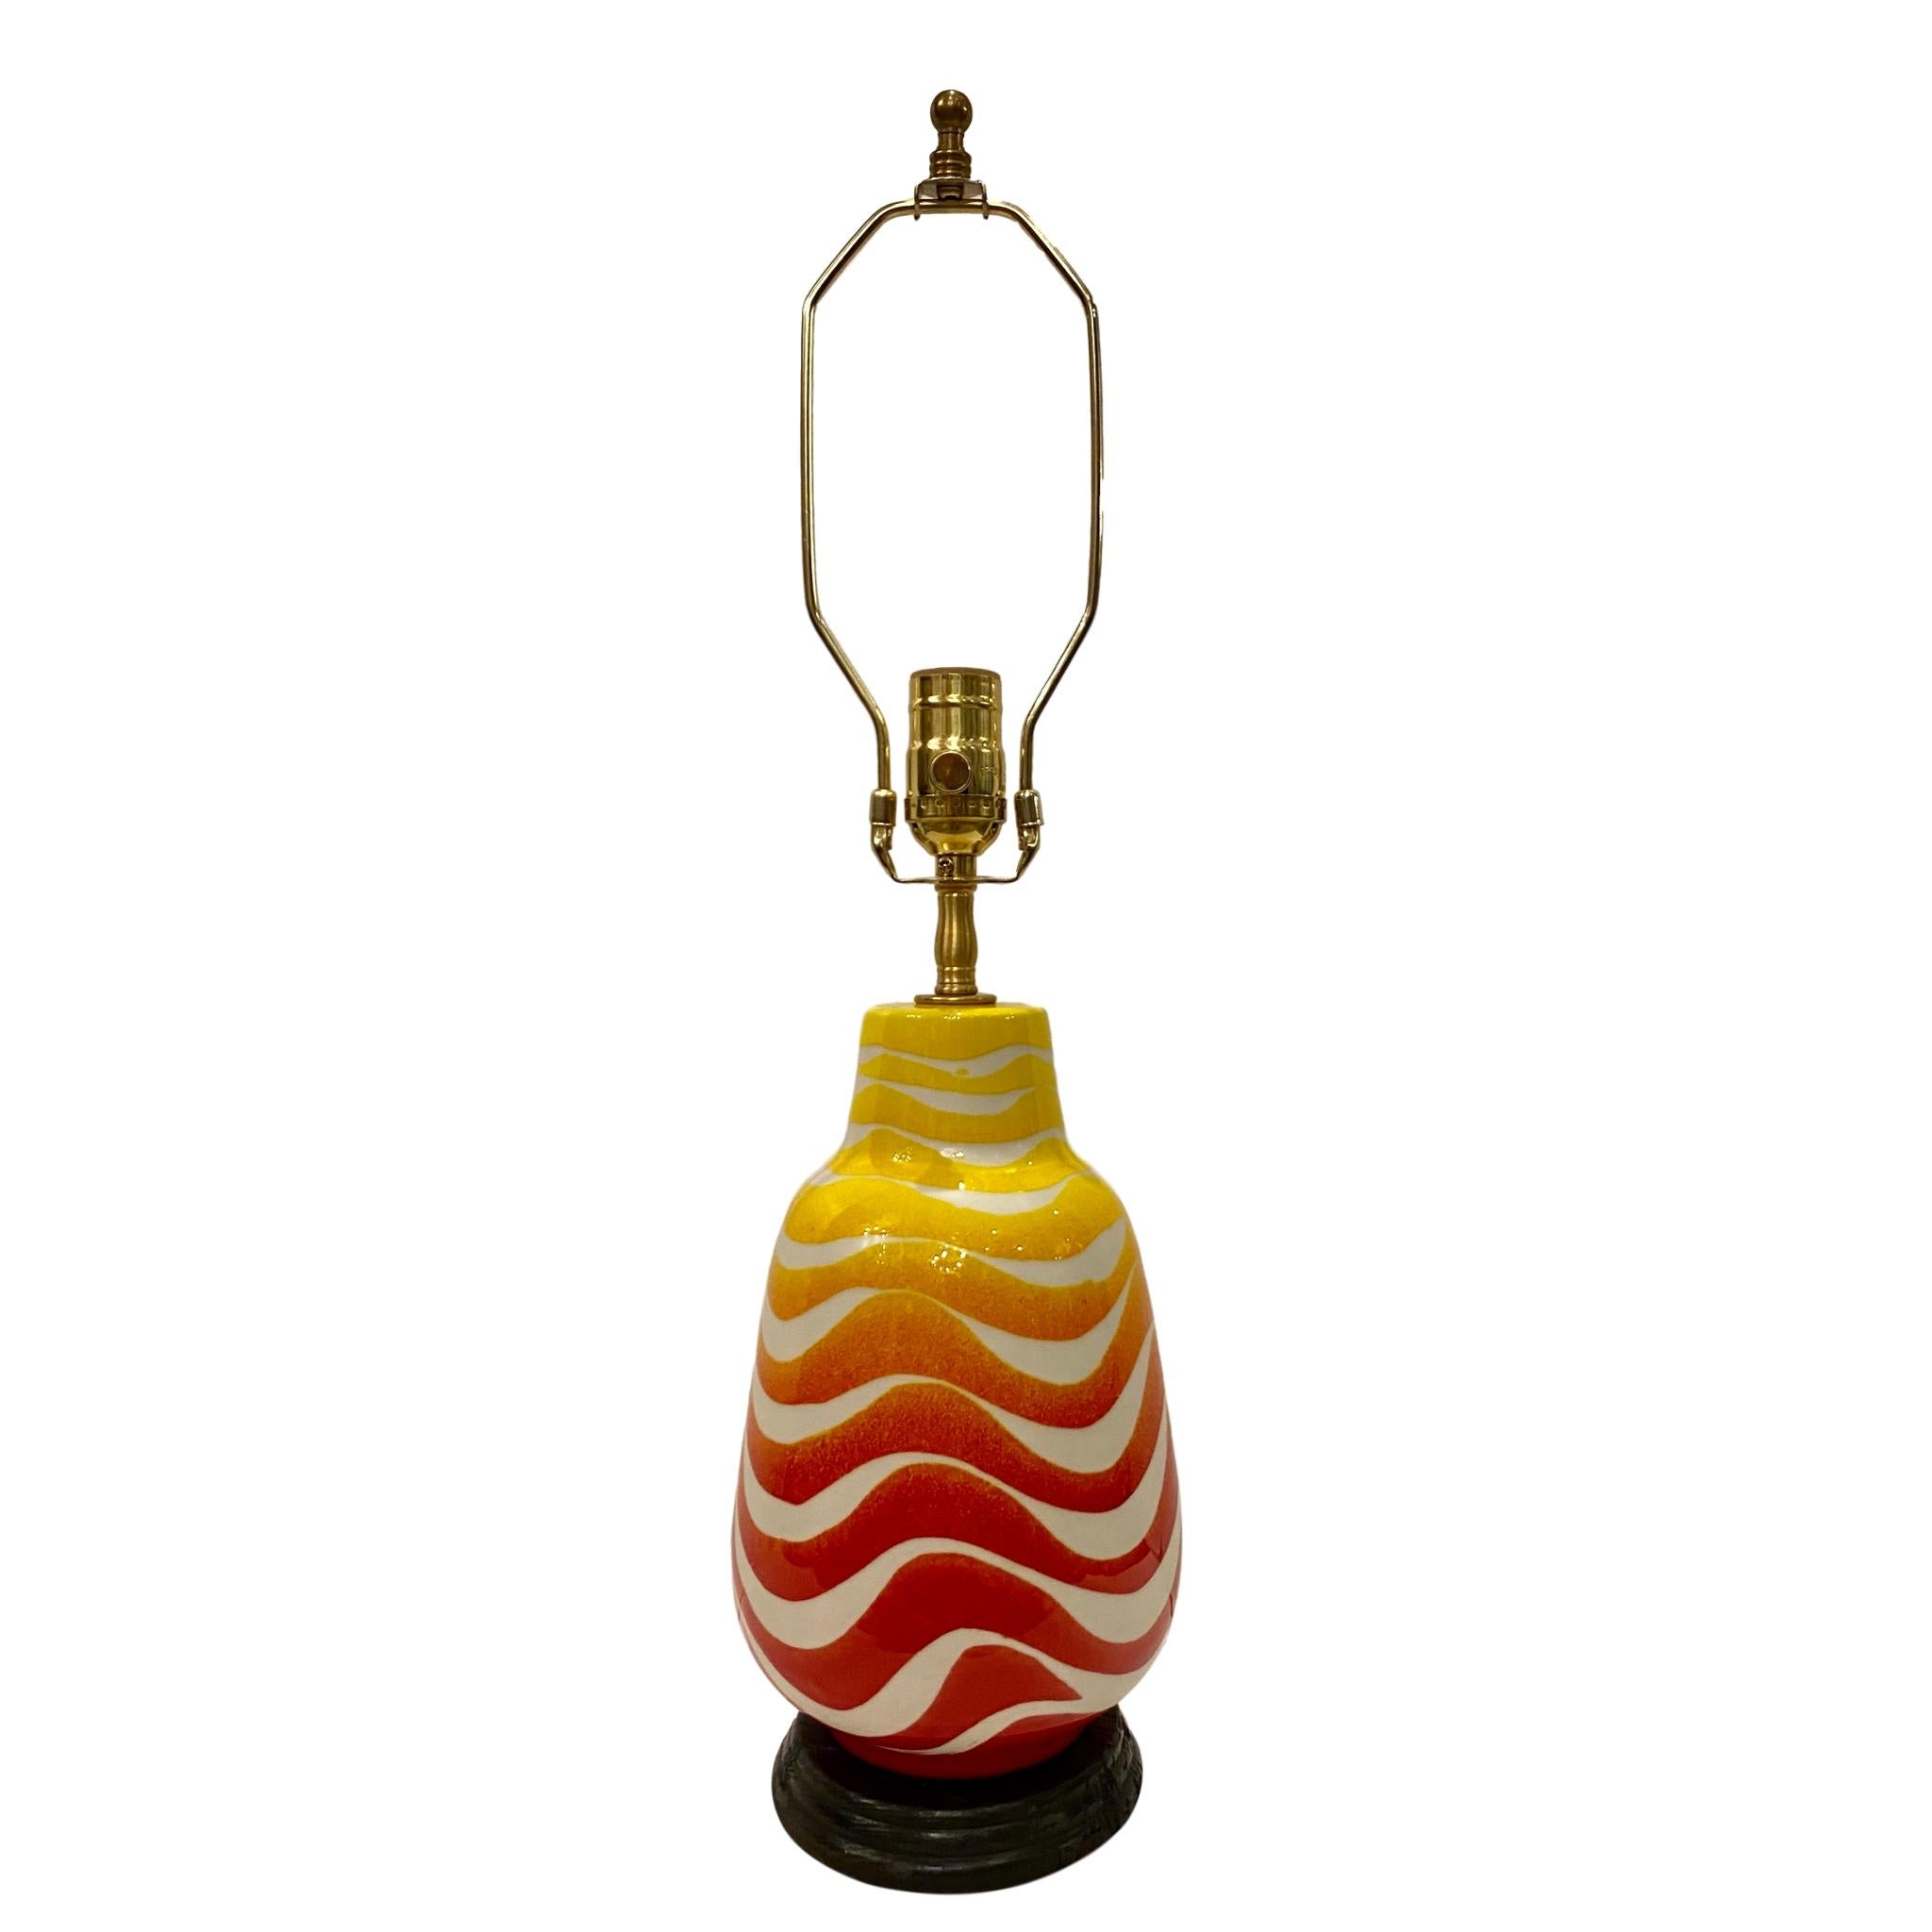 Eine einzelne Tischlampe aus italienischem glasiertem Porzellan aus den 1950er Jahren mit einem Wellenmuster aus Rot und Gelb auf weißem Grund.

Abmessungen:
Höhe des Körpers: 11,5